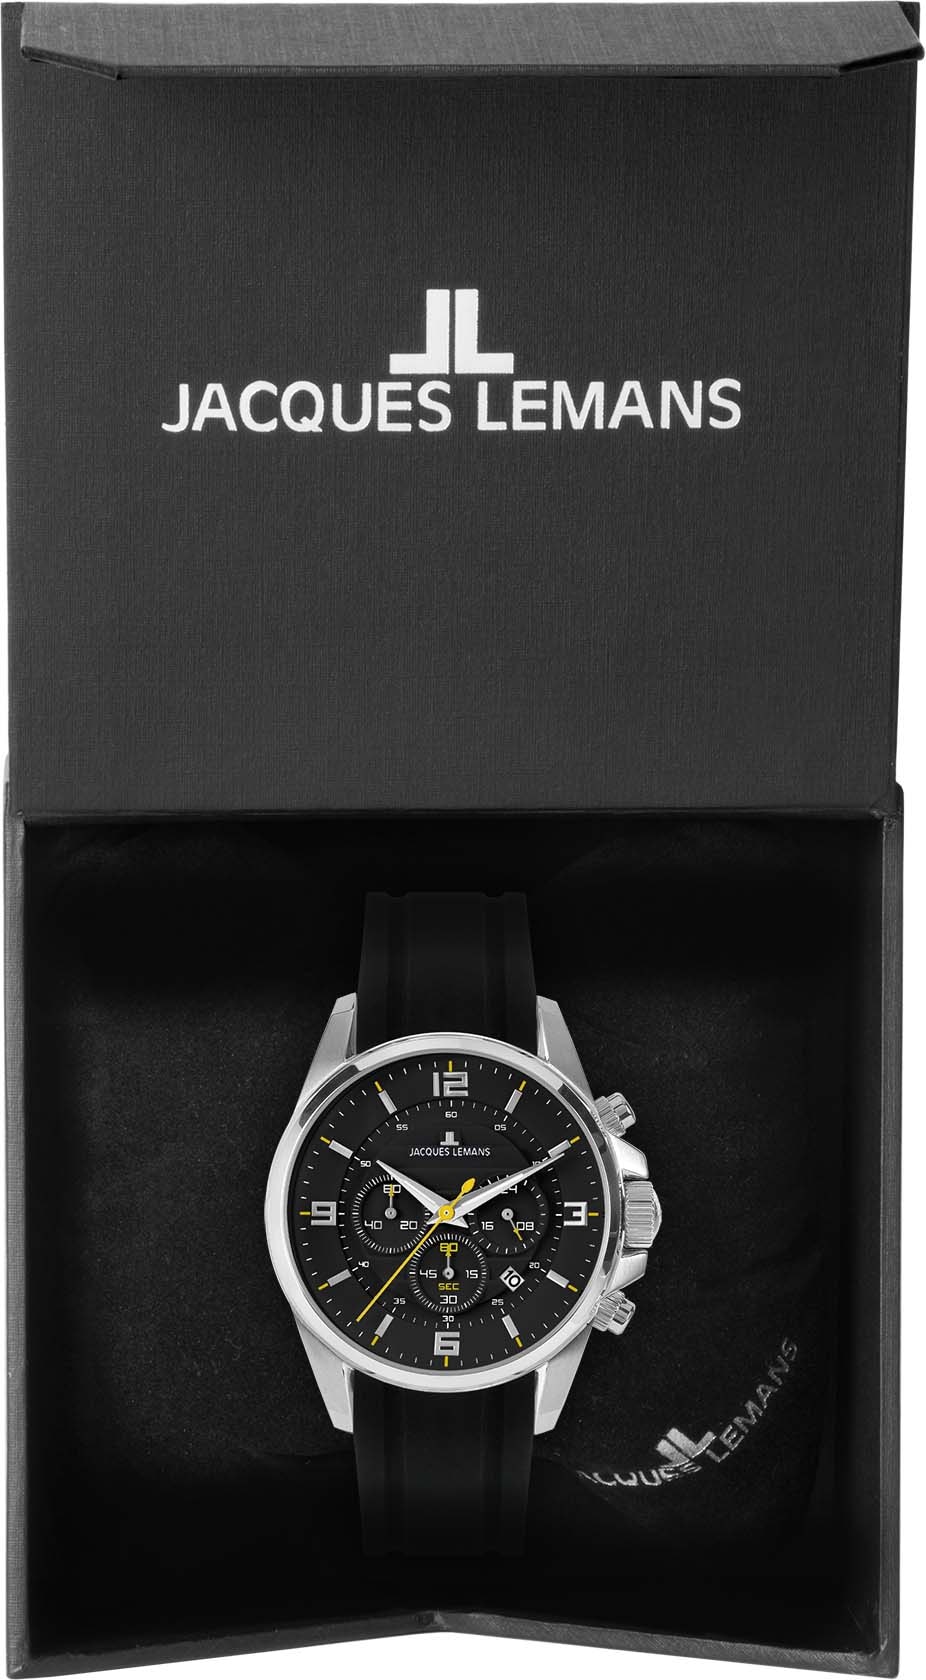 Chronograph Lemans Jacques »Liverpool 1-2118A«